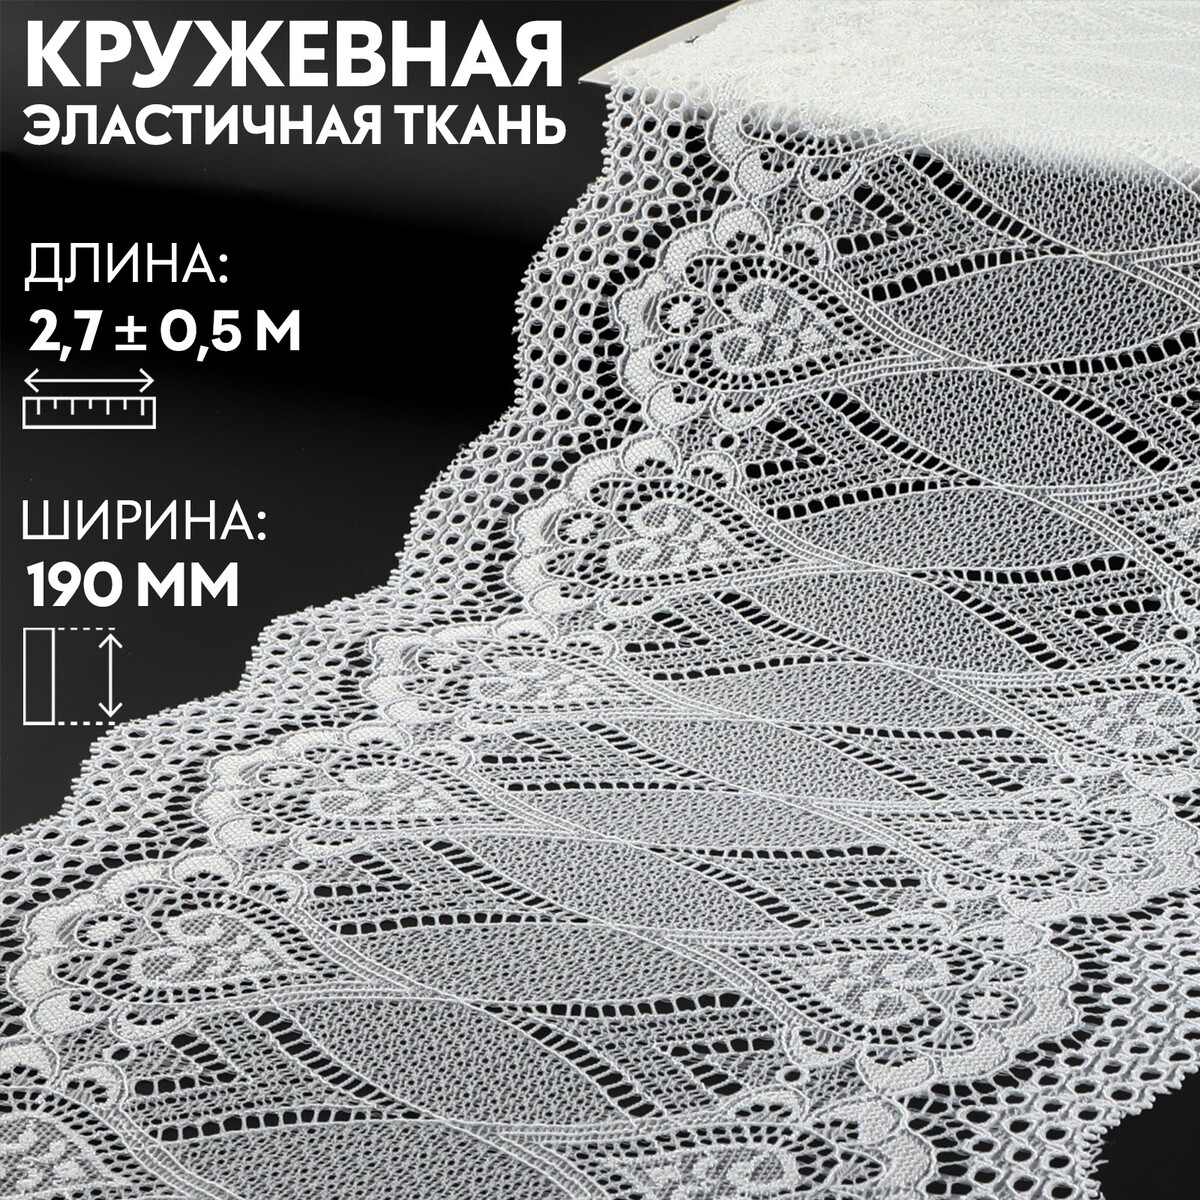 Кружевная эластичная ткань, 190 мм × 2,7 ± 0,5 м, цвет белый